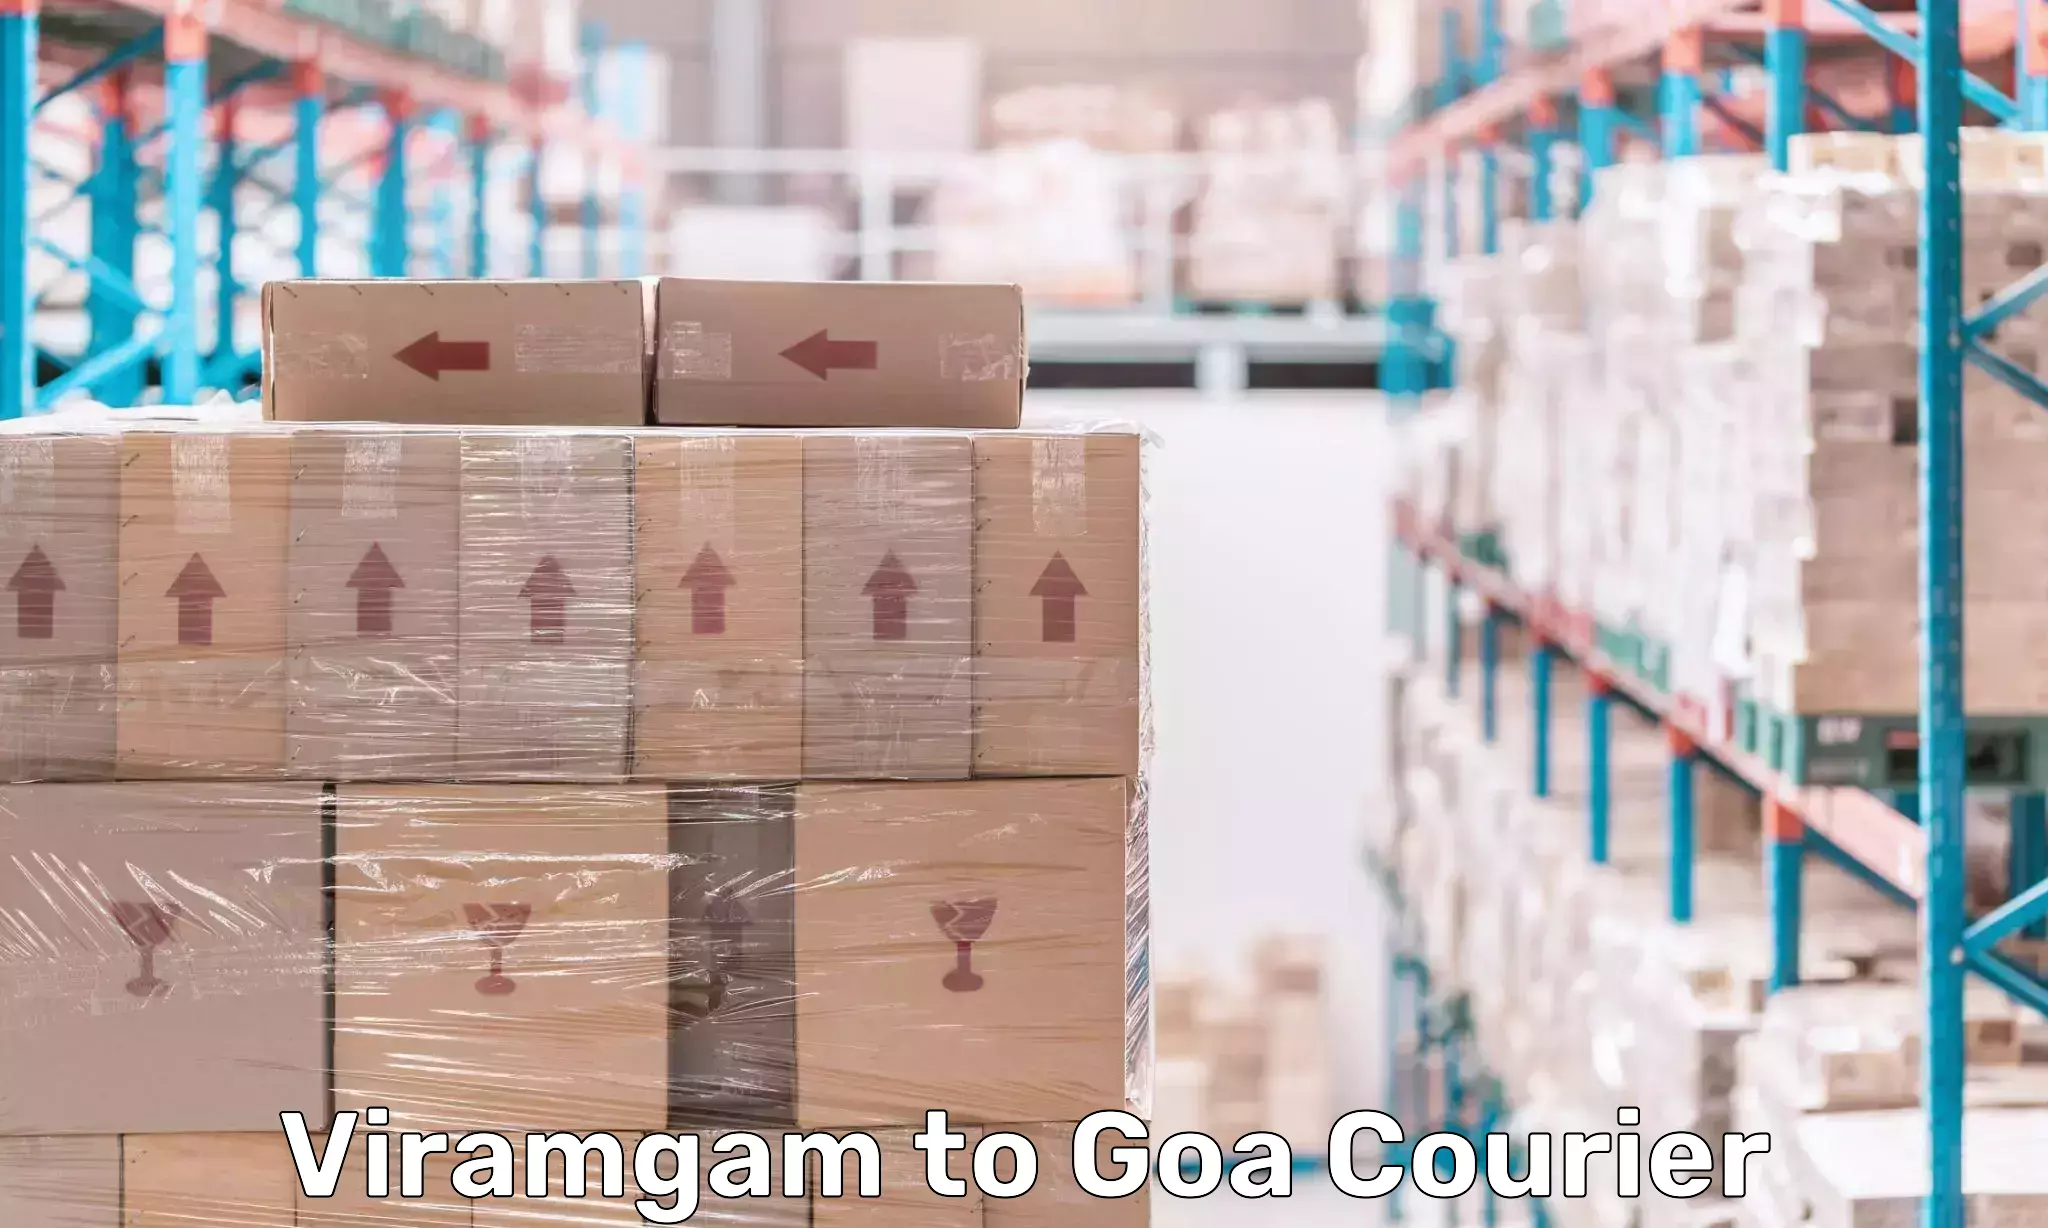 Multi-city courier Viramgam to South Goa